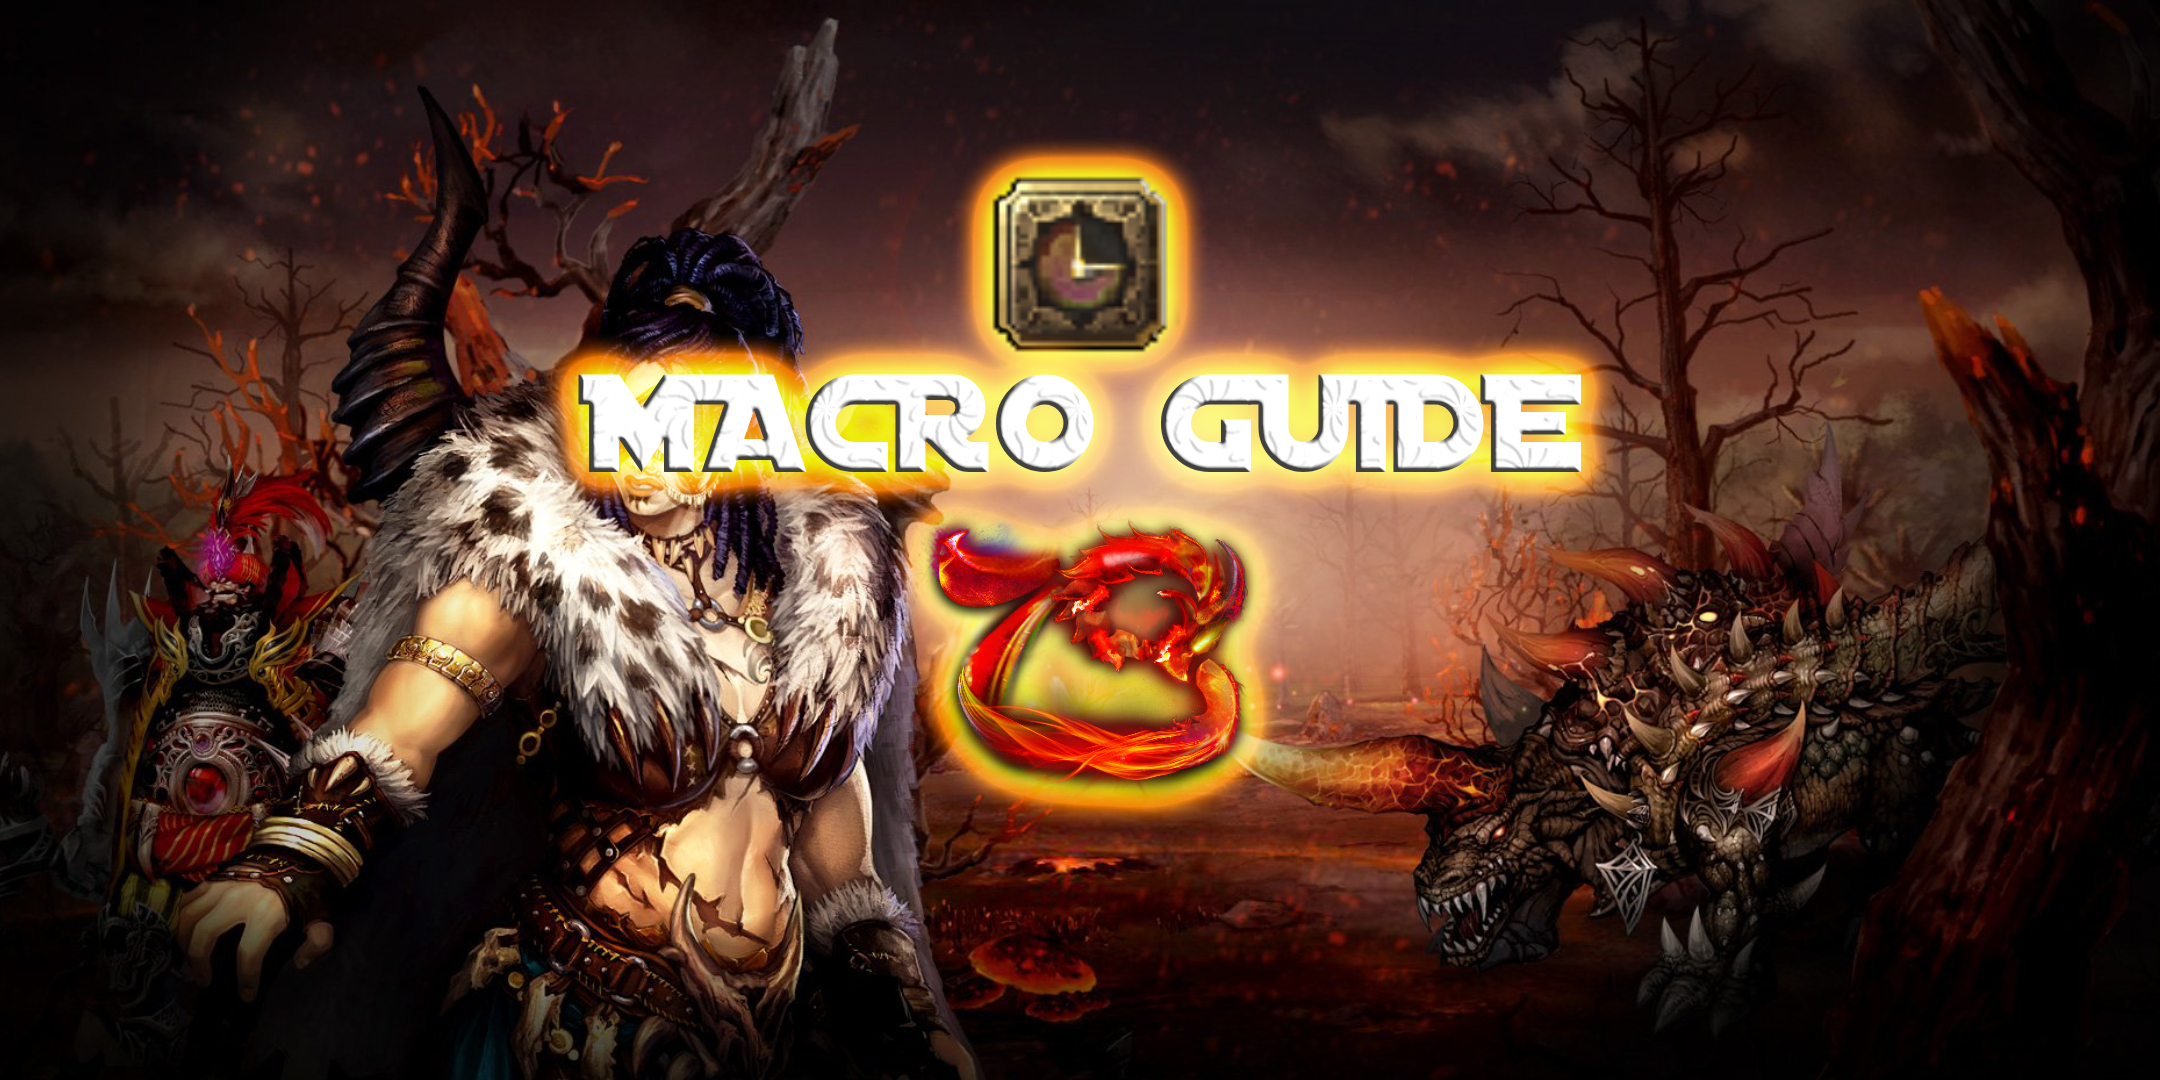 Macro Guide